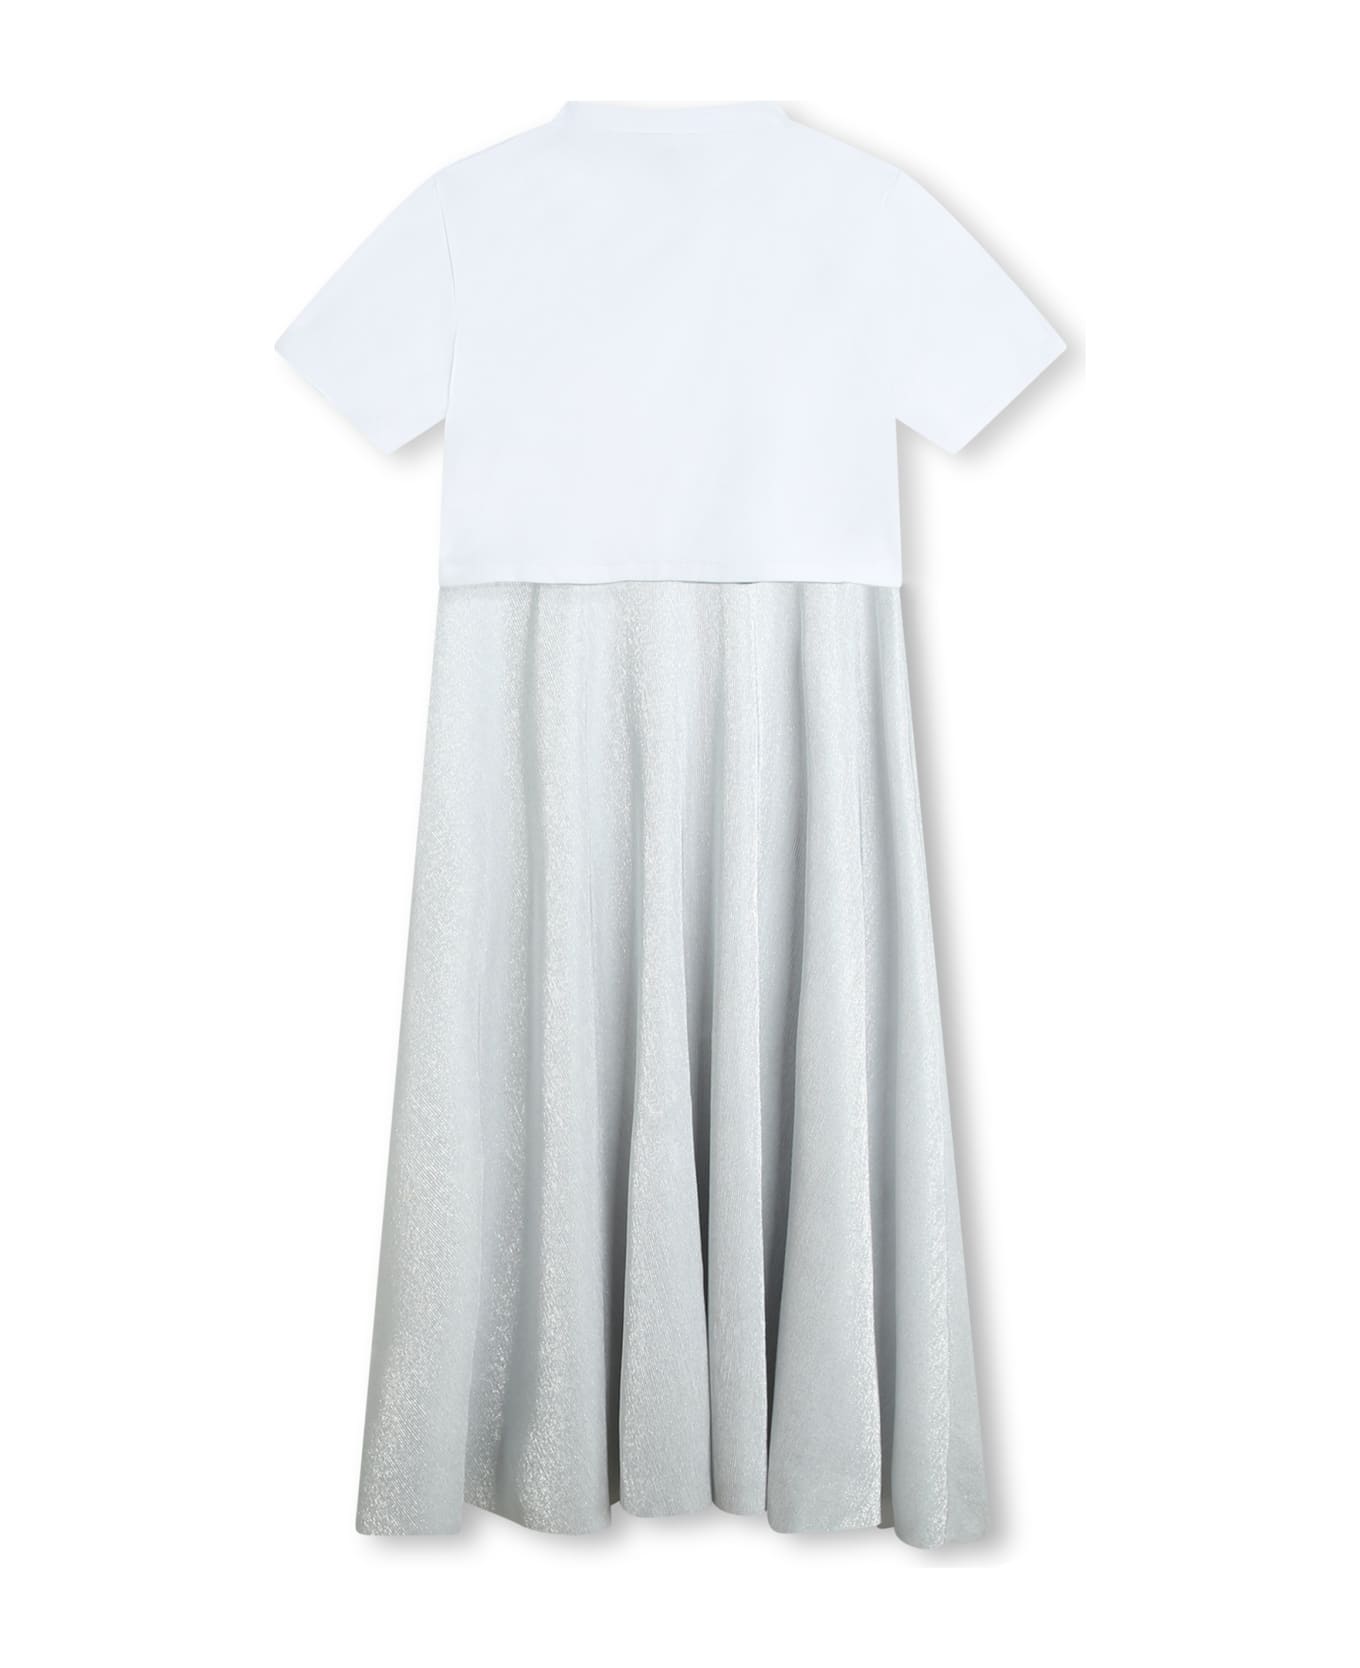 DKNY Dresses With Logo - Gray